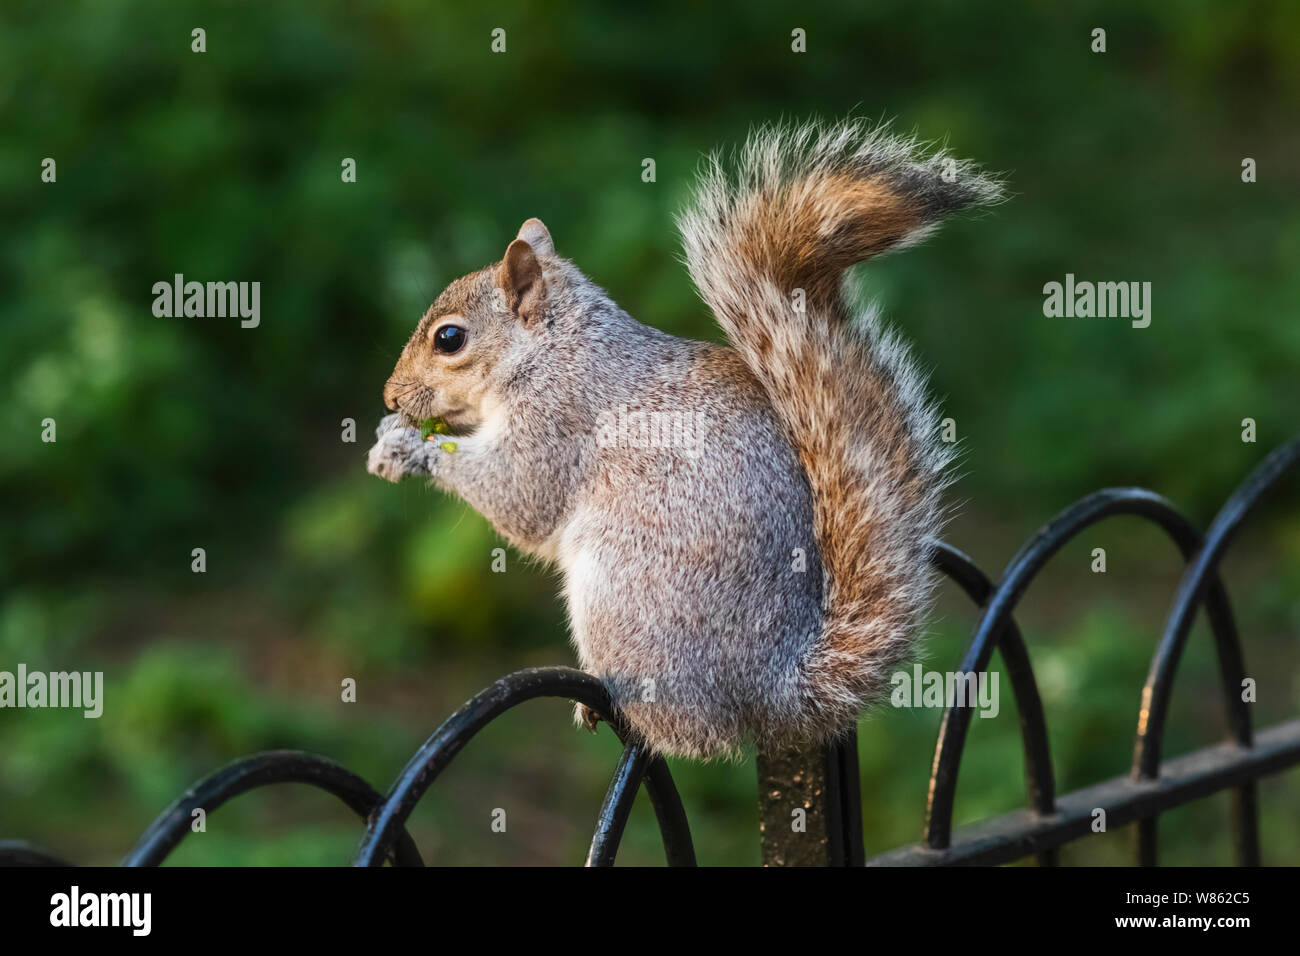 Inghilterra, Londra, St.Jame's Park, scoiattolo grigio di mangiare il dado Foto Stock